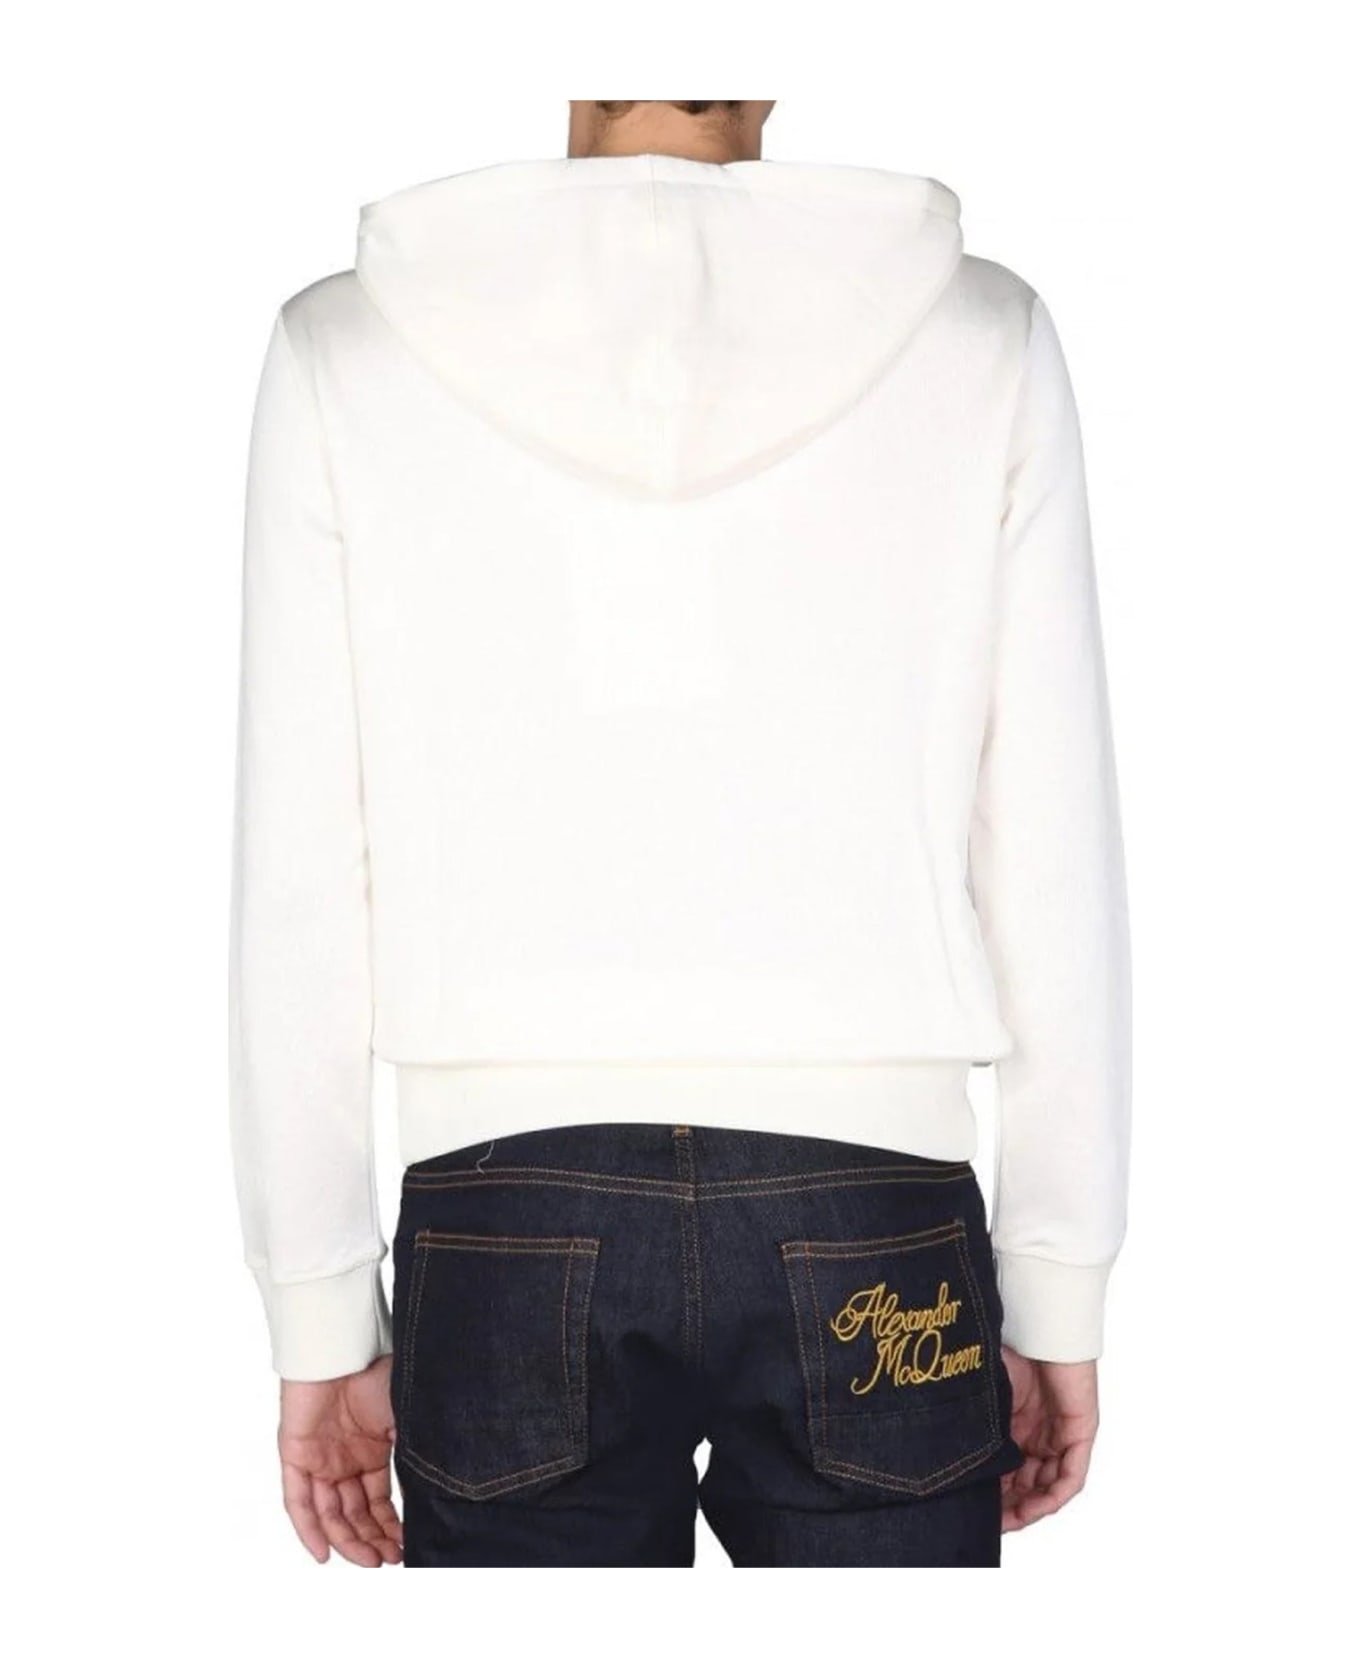 Alexander McQueen Printed Hooded Sweatshirt - White